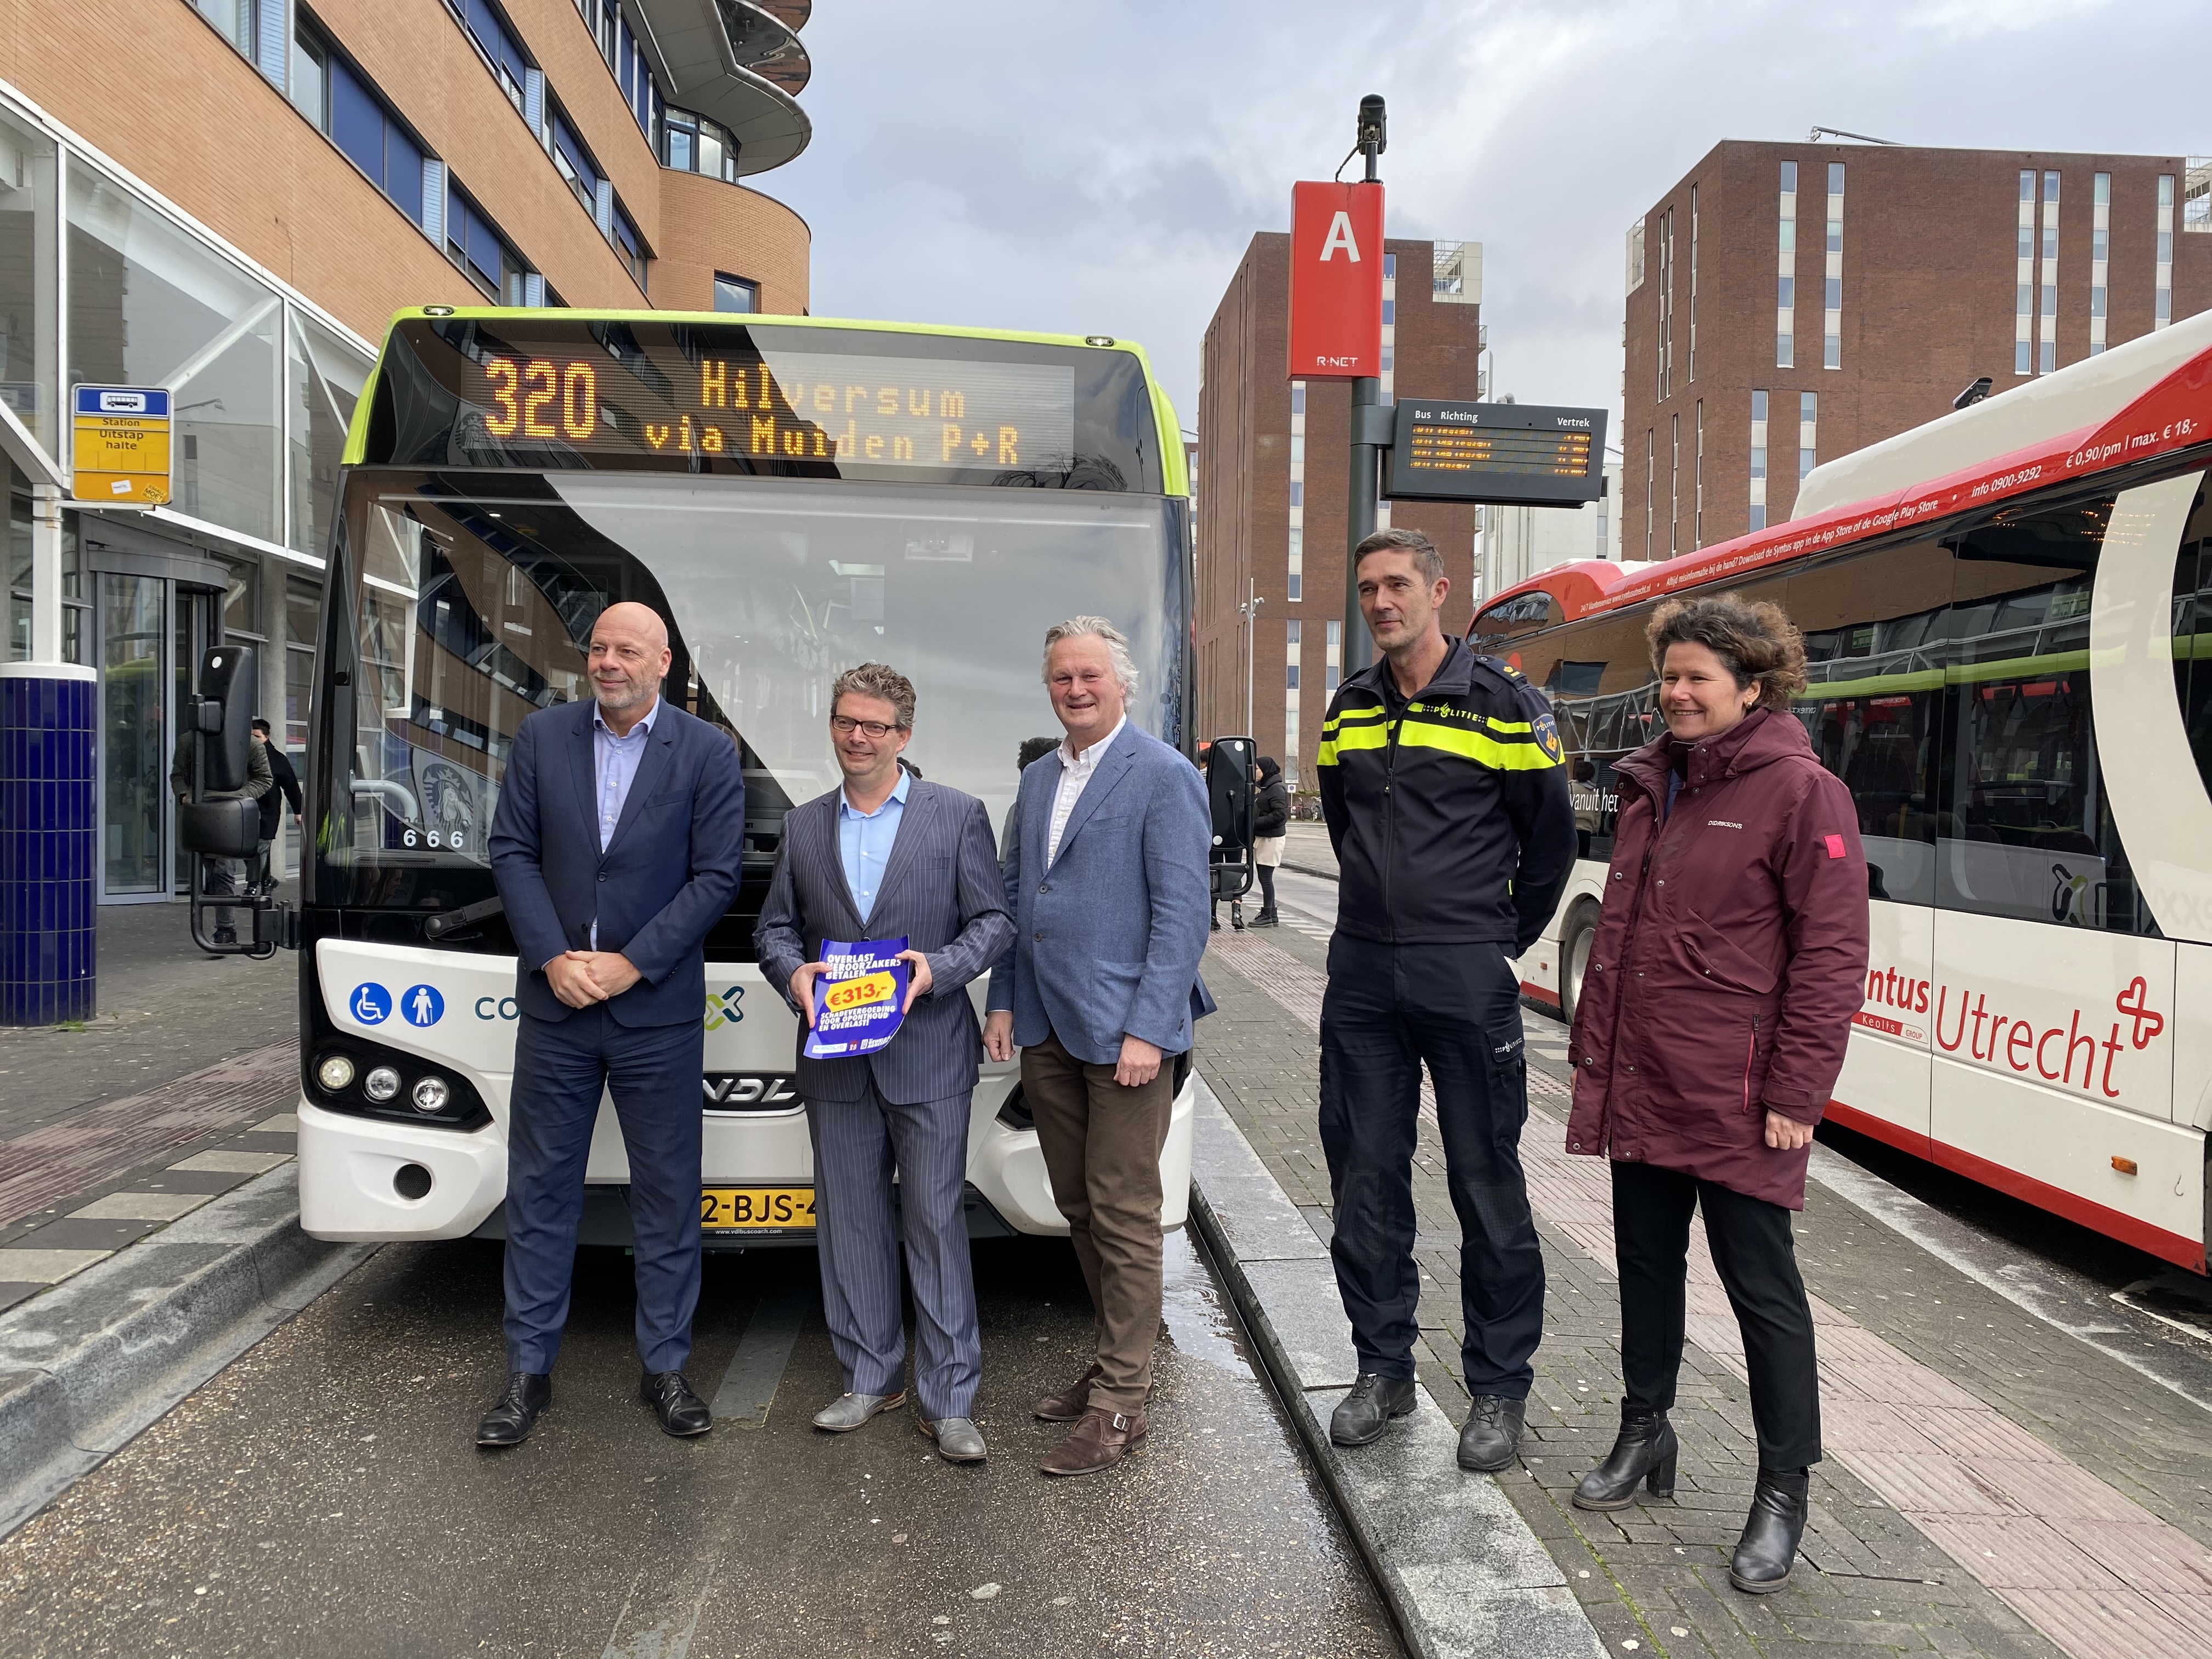 Connexxion en Keolis zetten volgende stap naar veiliger openbaar vervoer